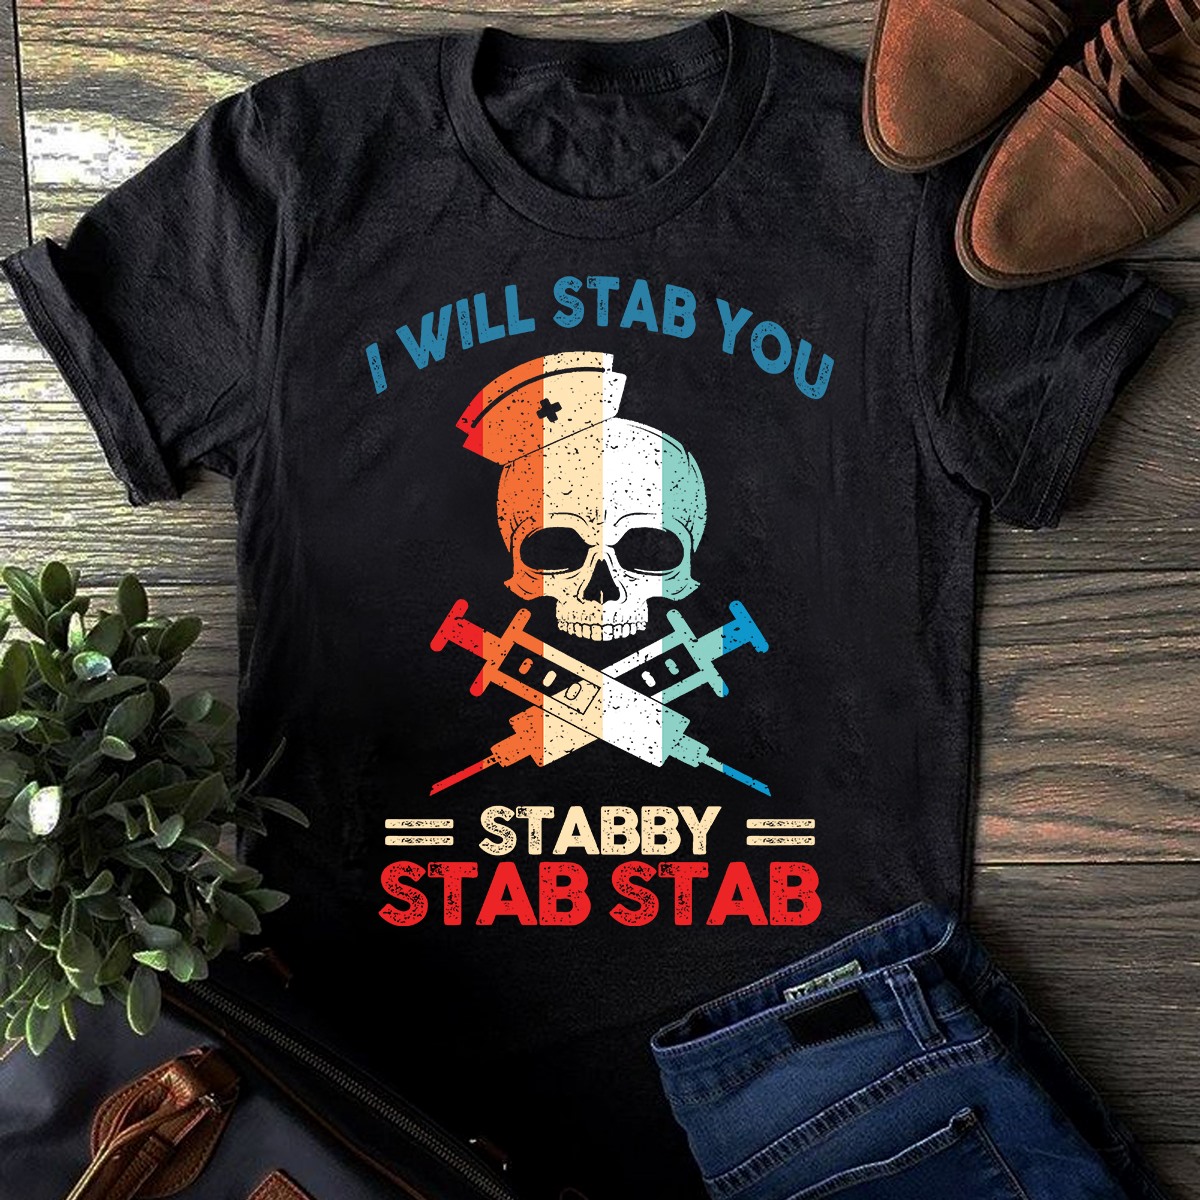 I will stab you stabby stab stab - Evil nurse, nurse the job